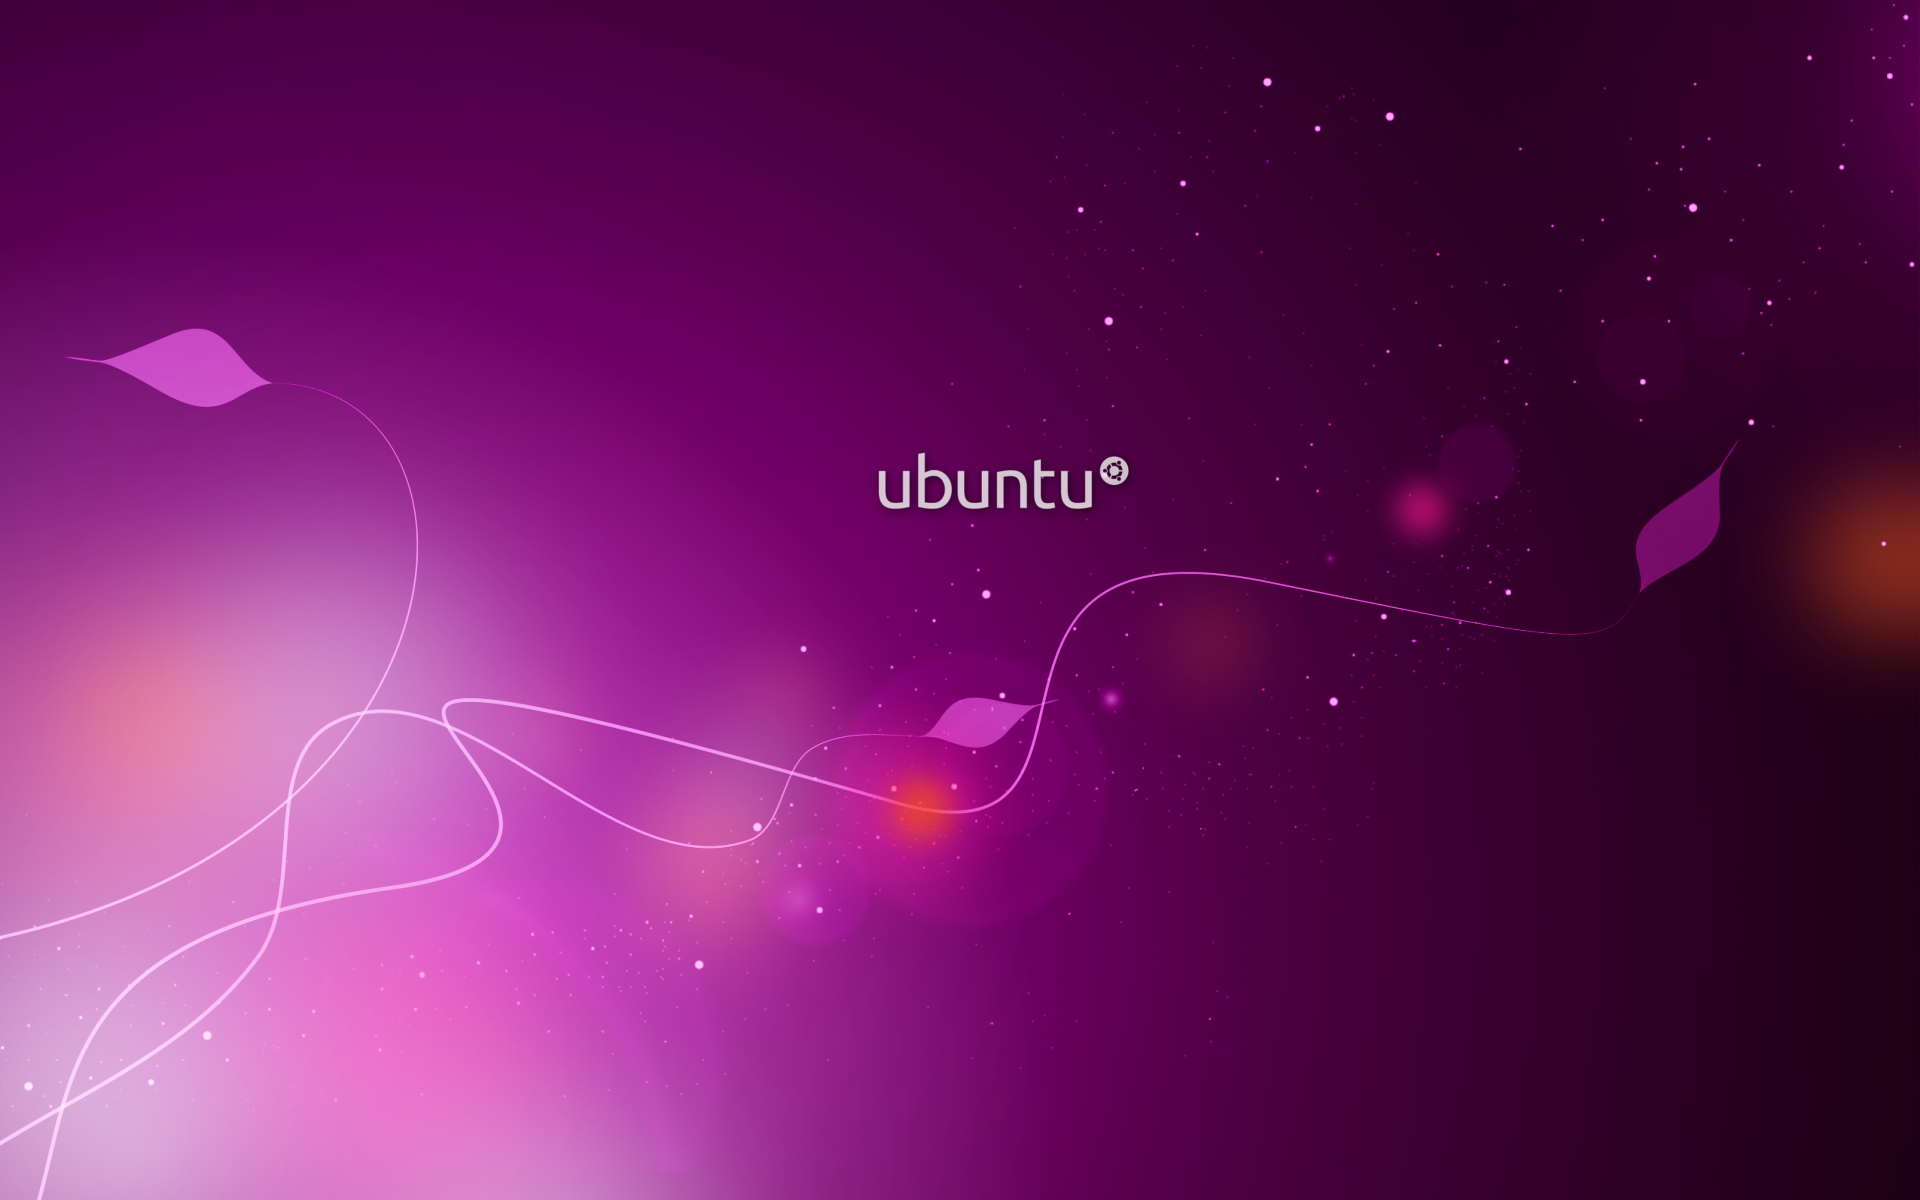 Download wallpapers for ubuntu